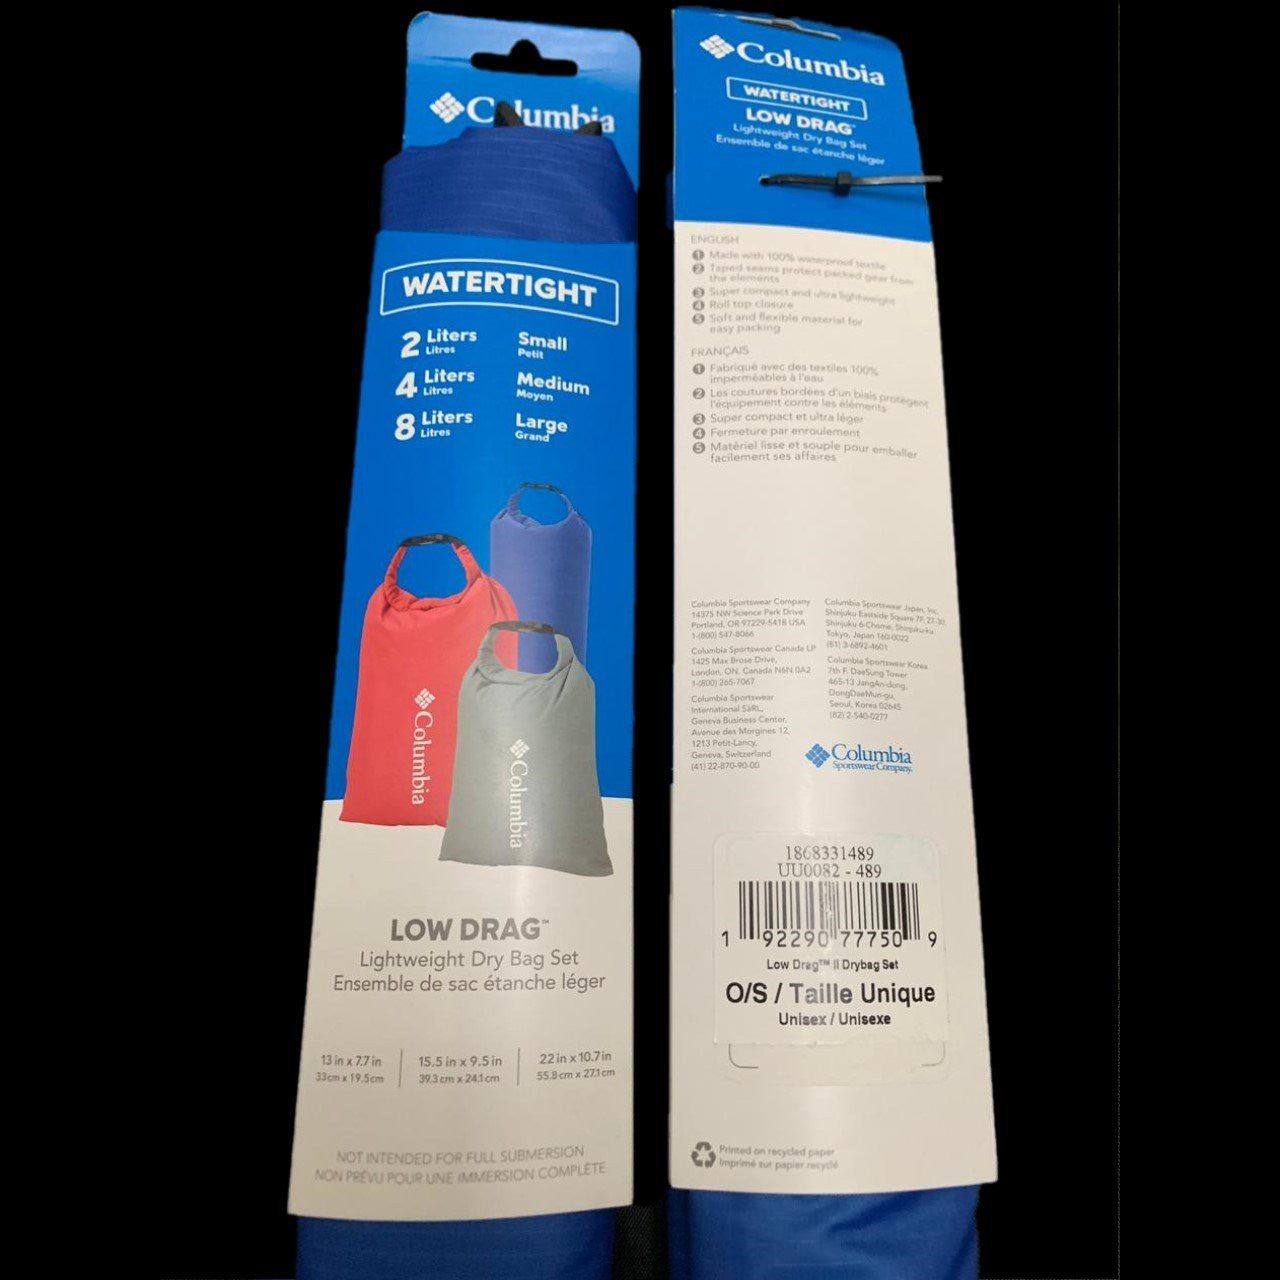 Bolsa seca Columbia (Dry bag) set de 3 unid, colores azul rey, rojo y gris. - The Gift Shop Costa Rica